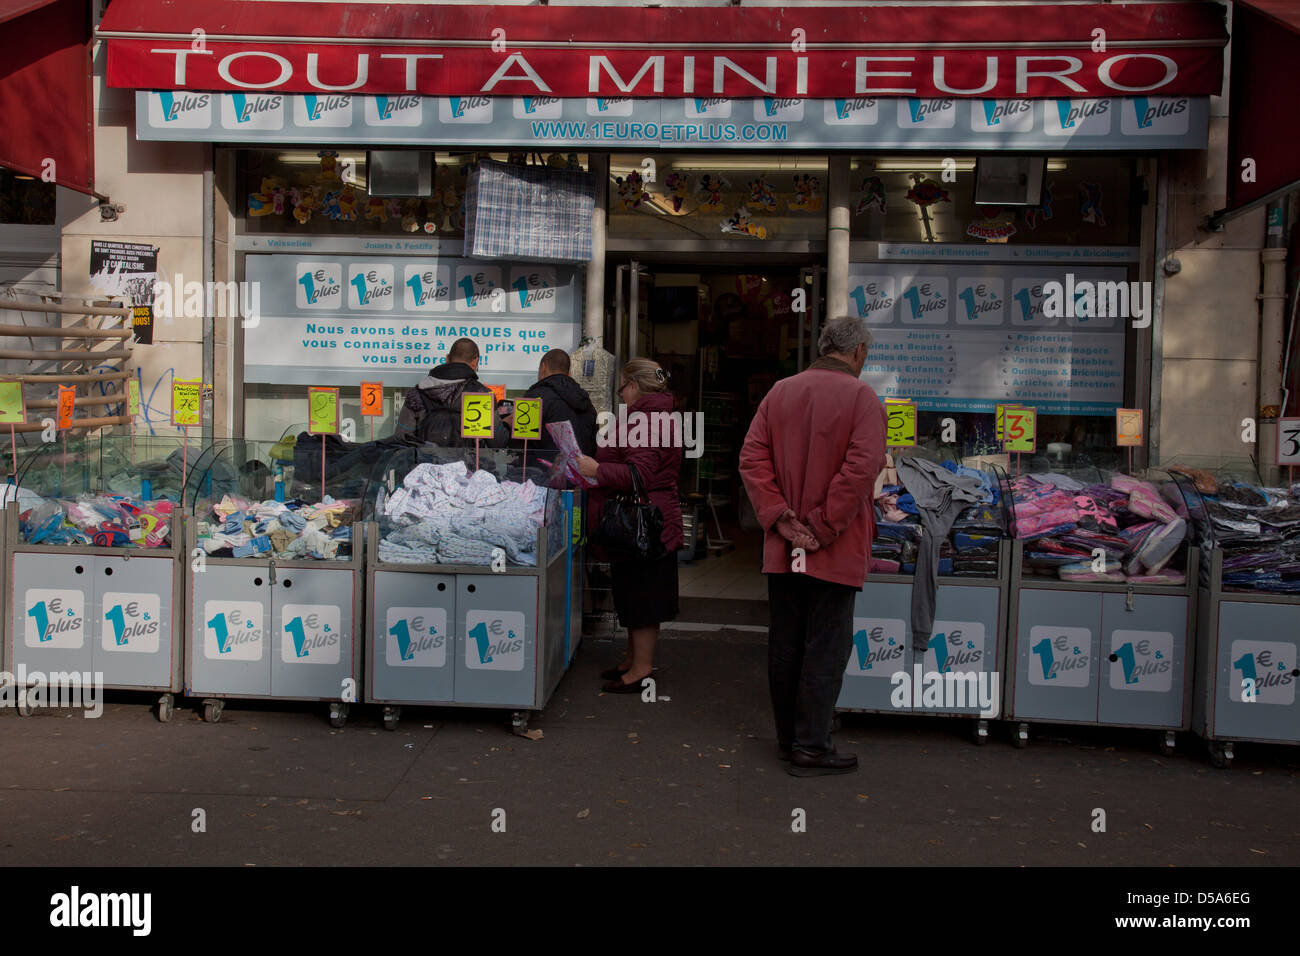 Bargain 1 Euro shop in Belleville, Paris, France Stock Photo